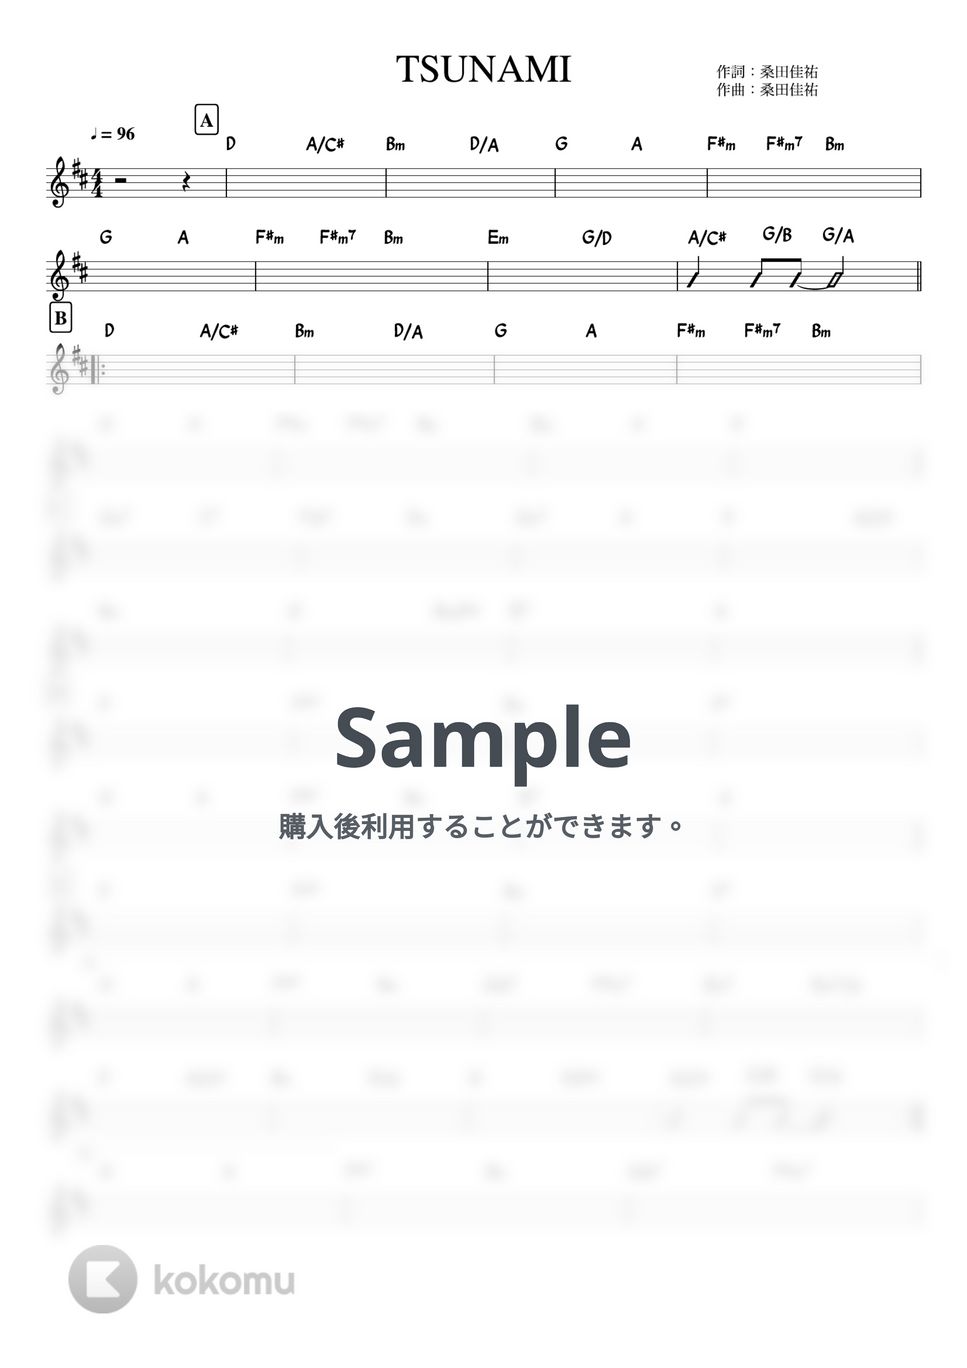 サザンオールスターズ - TSUNAMI (バンド用コード譜) by 箱譜屋